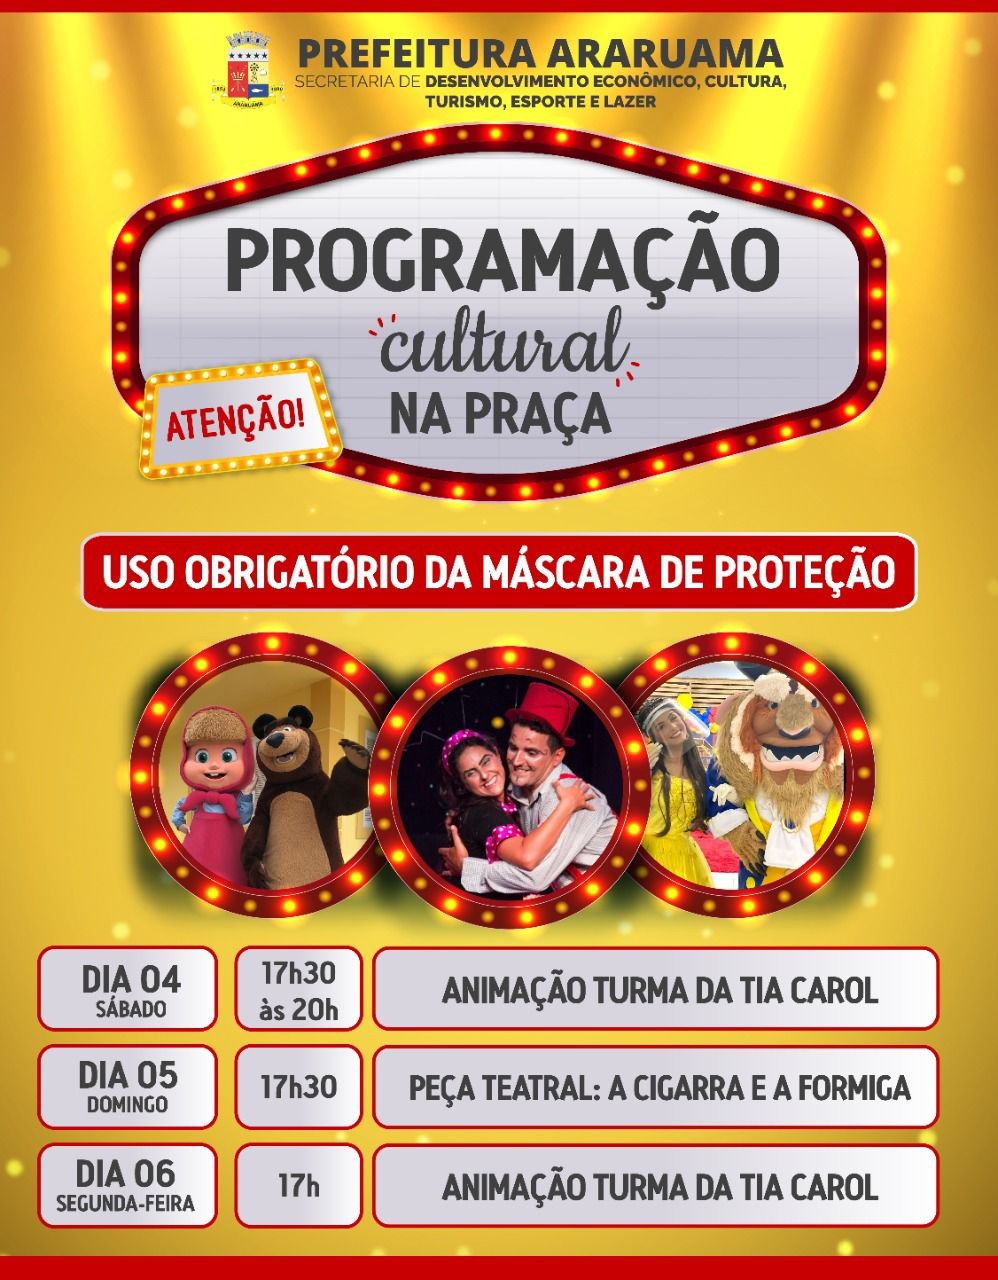 O projeto “Programação Cultural na Praça” vai levar entretenimento, arte e cultura para as crianças de Araruama nesse fim de semana